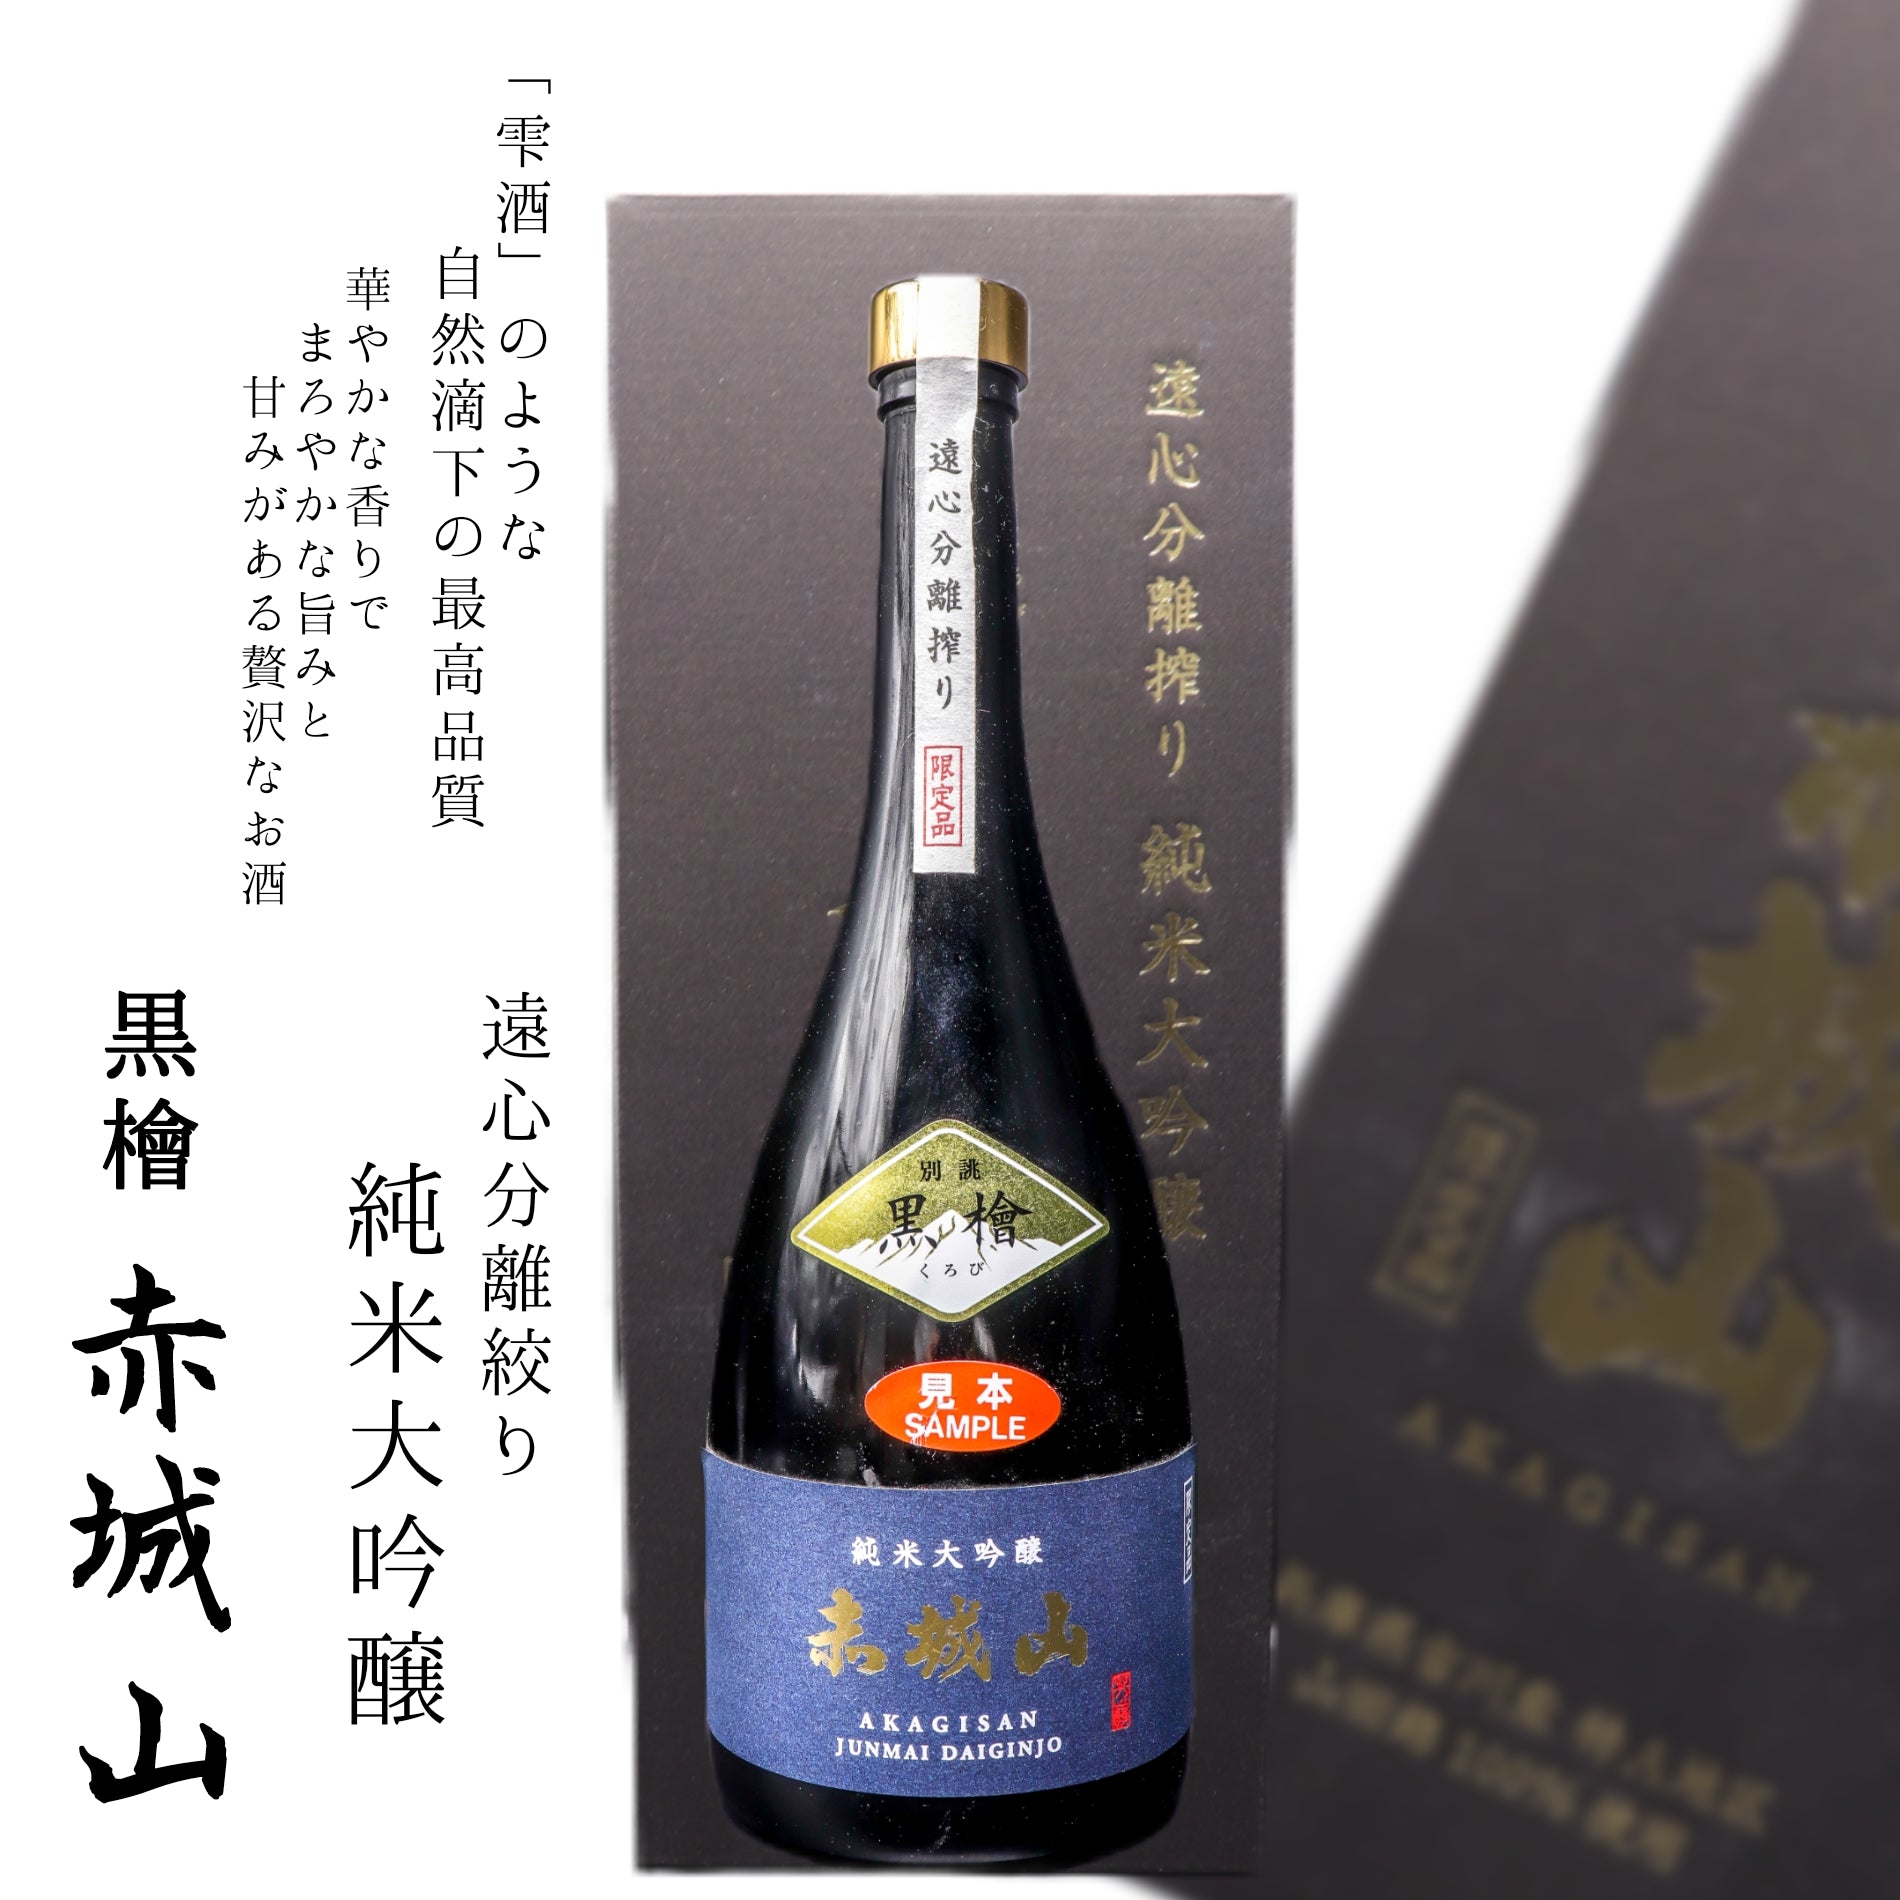 【在庫セール】赤城山純米大吟醸黒檜(くろび) 日本酒